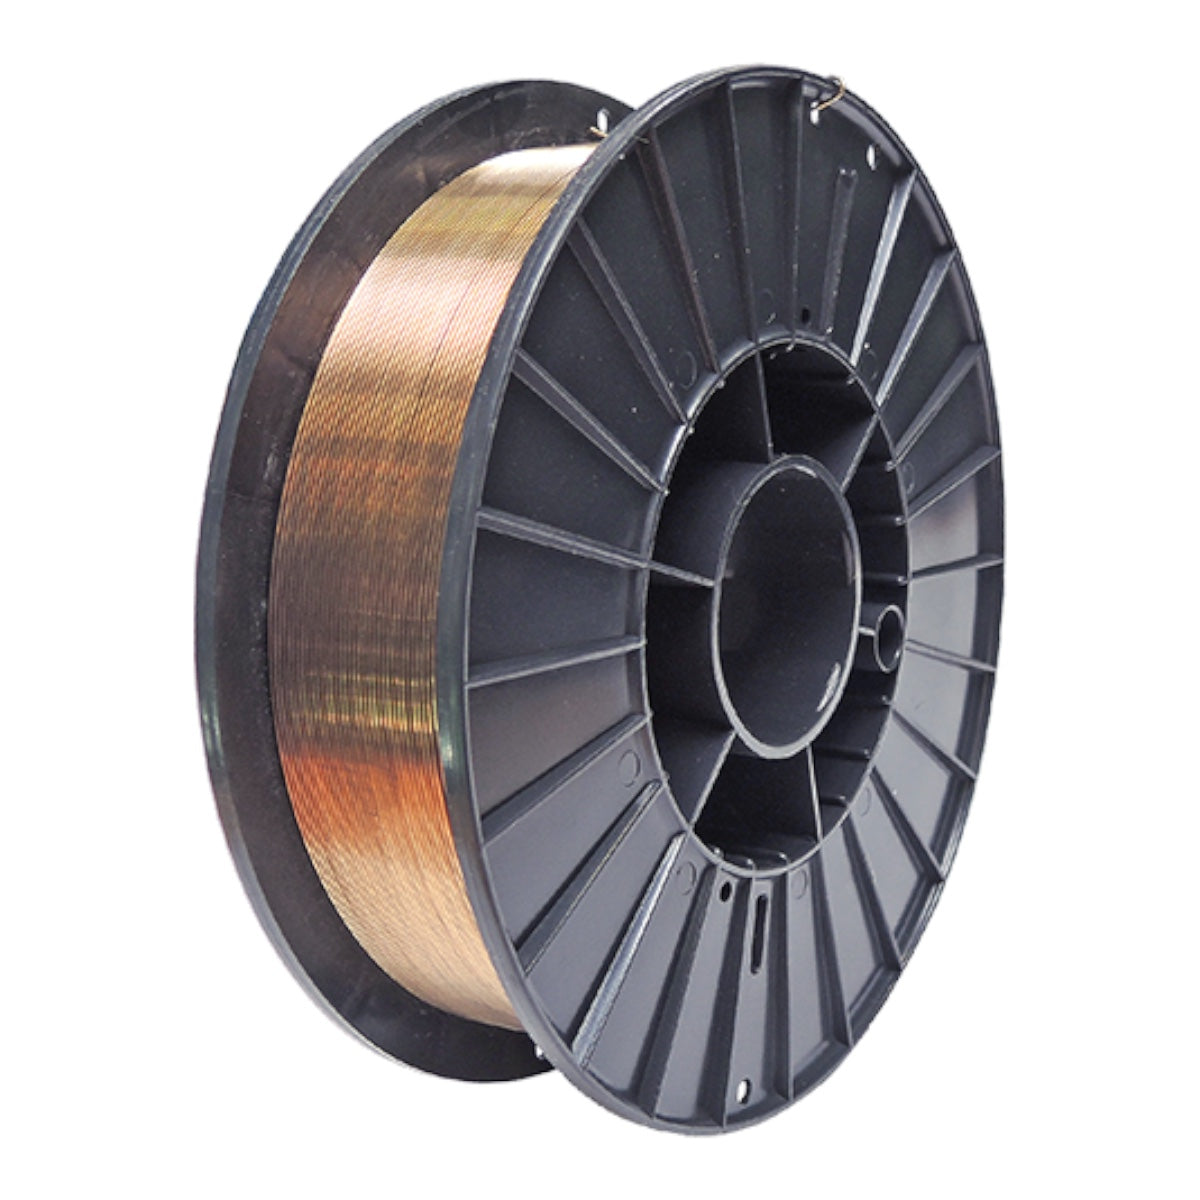 Welding wire CuAl8 | Ø 1.0mm | D200 | 5 kg InvertaPuls IP | IM 240-i welding machine